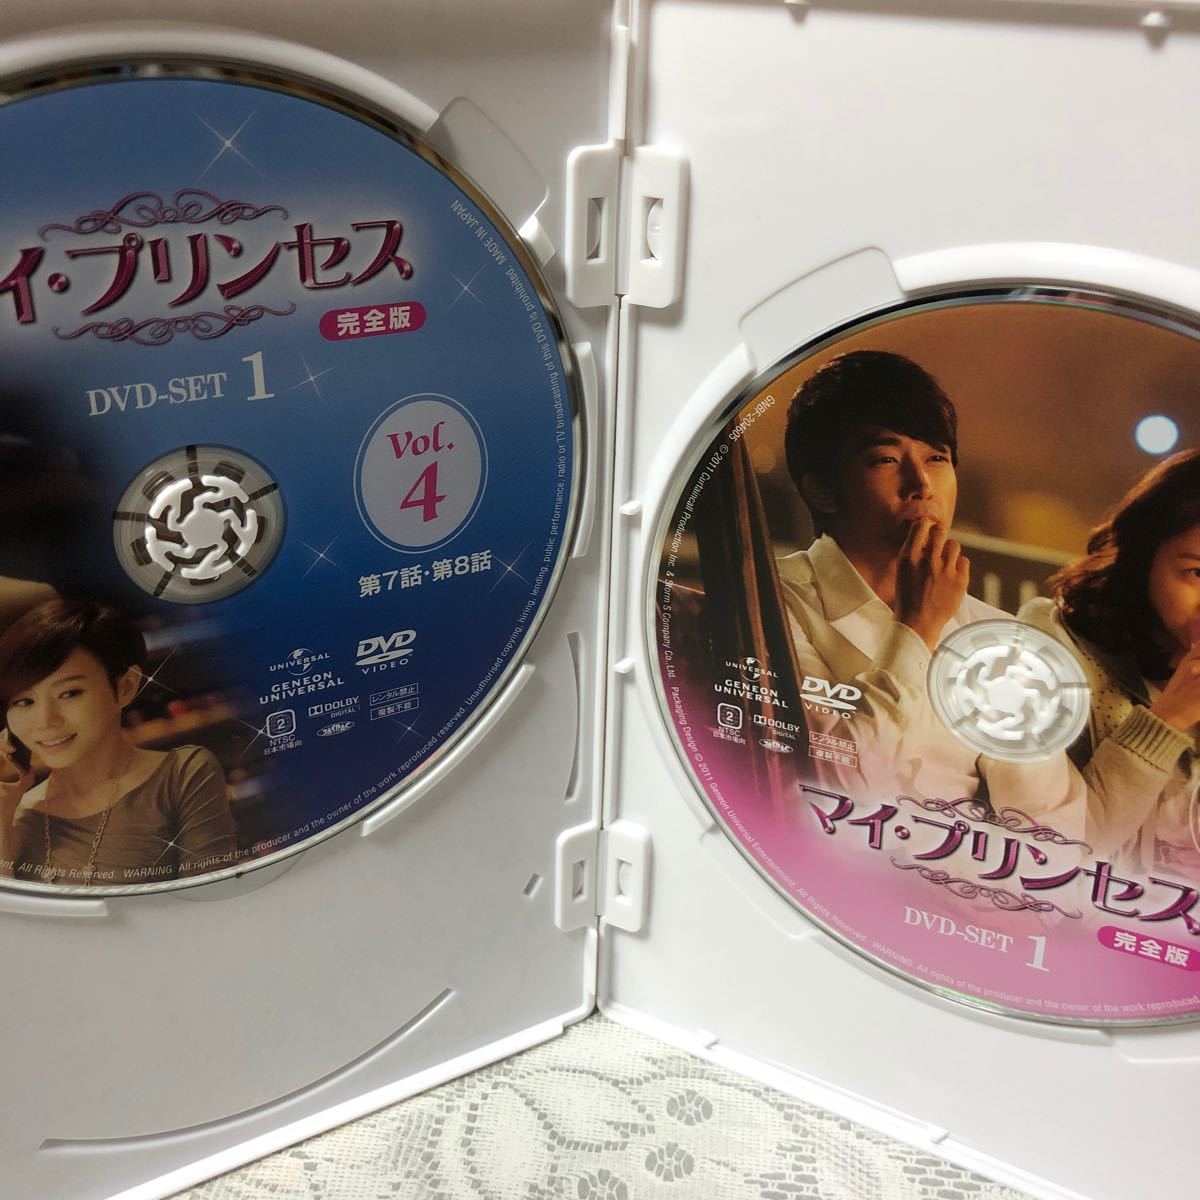 マイプリンセス 完全版 DVD-SET1